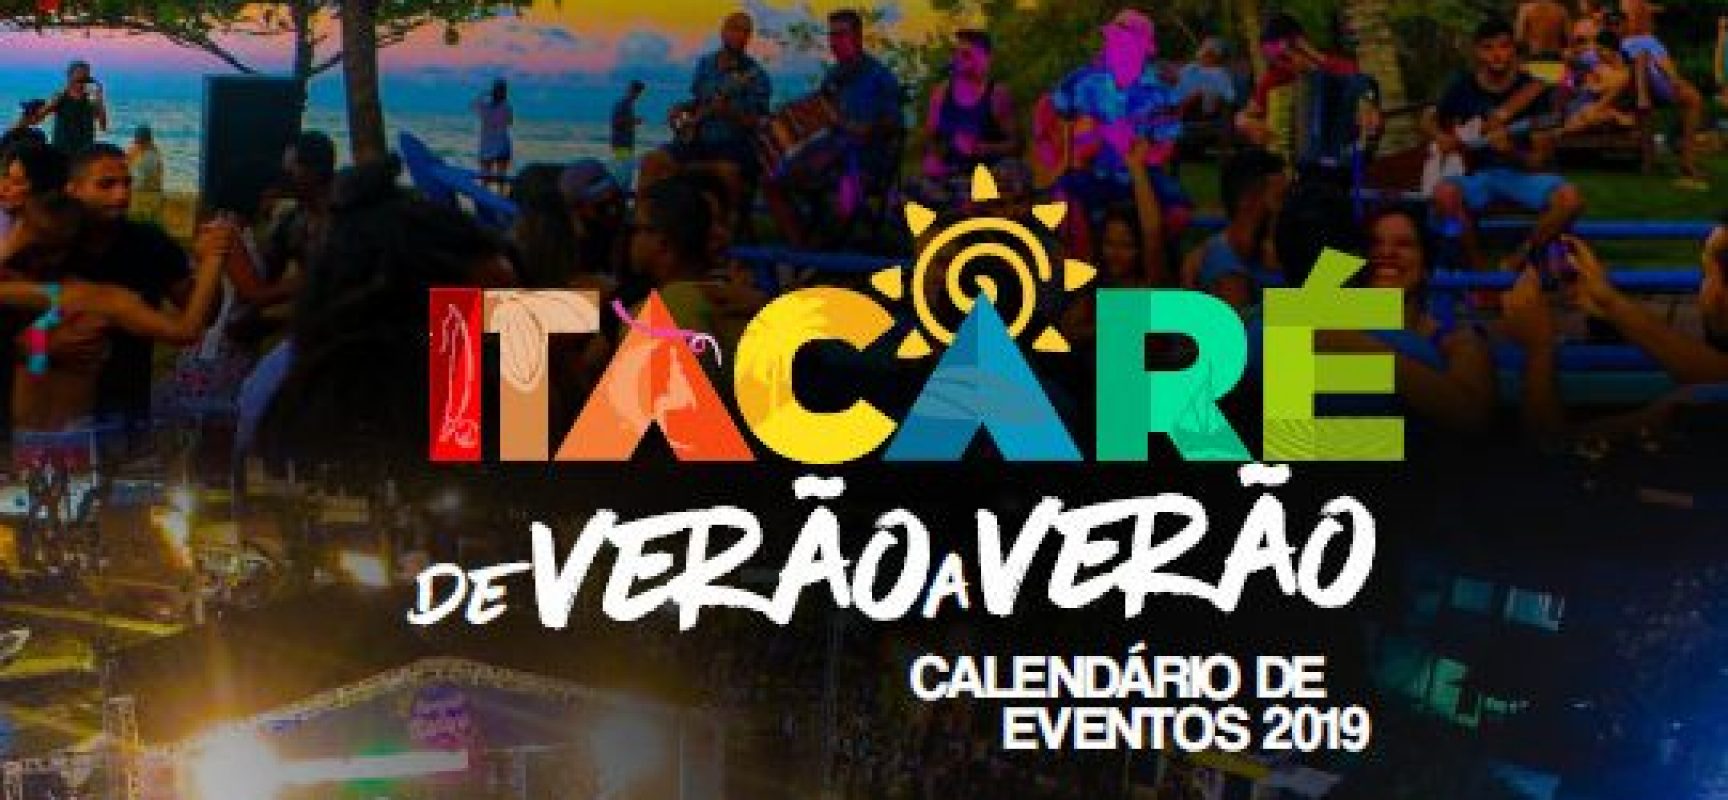 Itacaré lançará nova campanha  turística na maior feira das américas